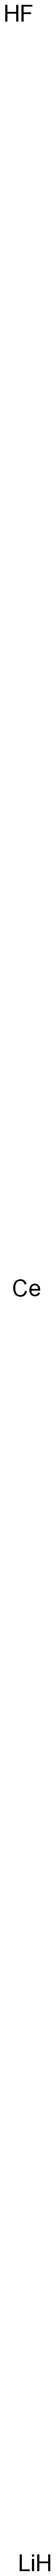 Cerium lithium fluoride Struktur